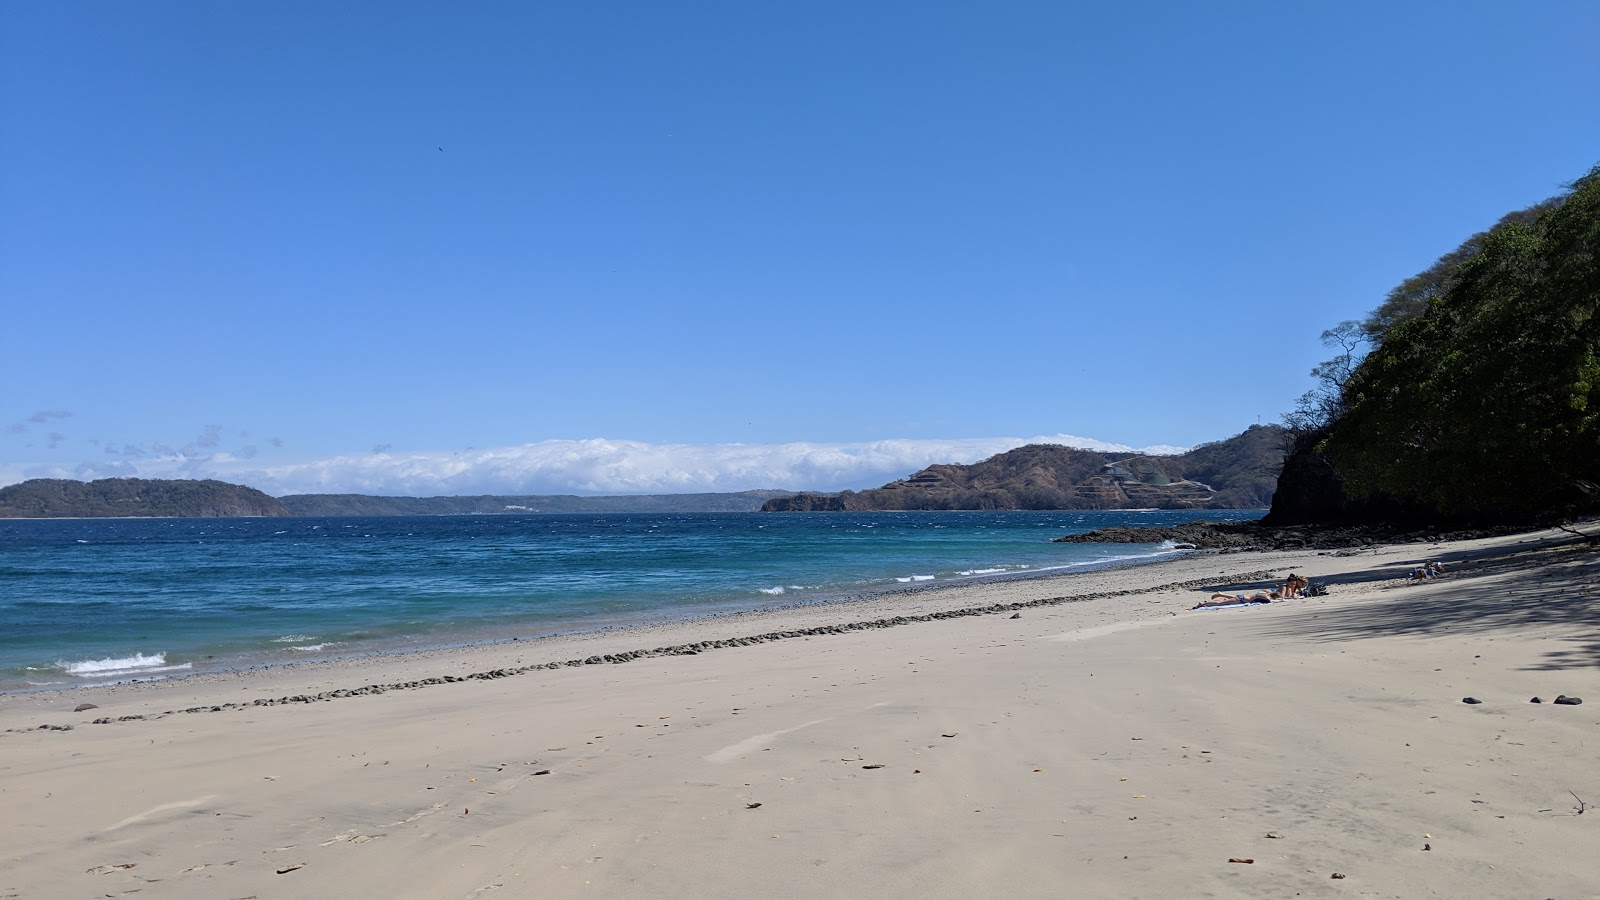 Playa Penca'in fotoğrafı geniş plaj ile birlikte